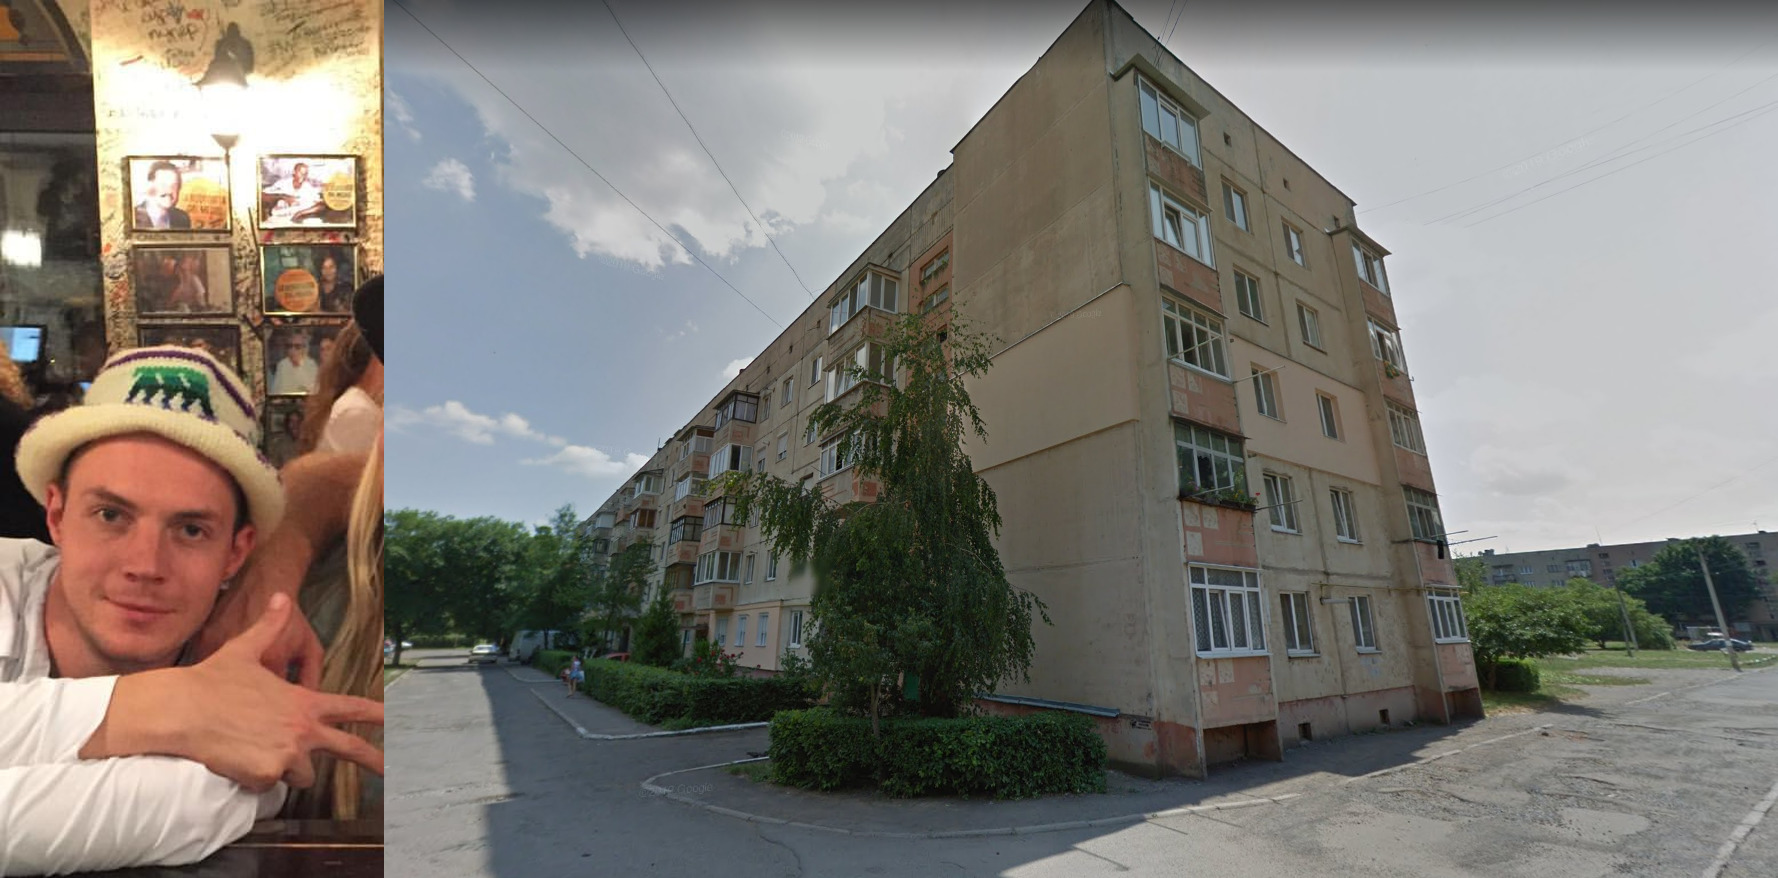 Никита Жуйко и его жильё. Фото © Google Maps, Vk.com